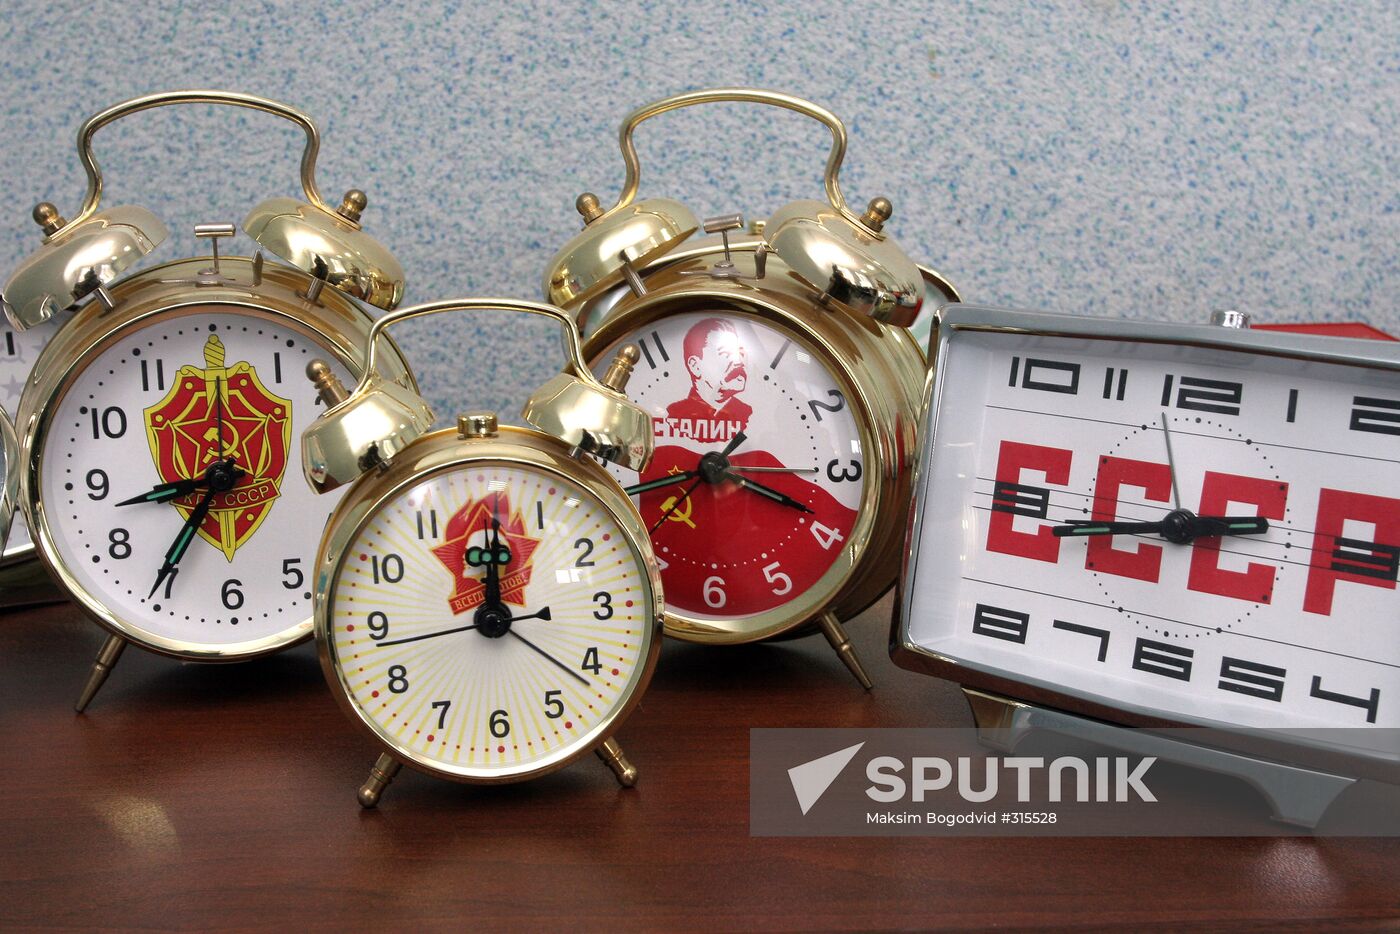 Vostok watch manufacturers